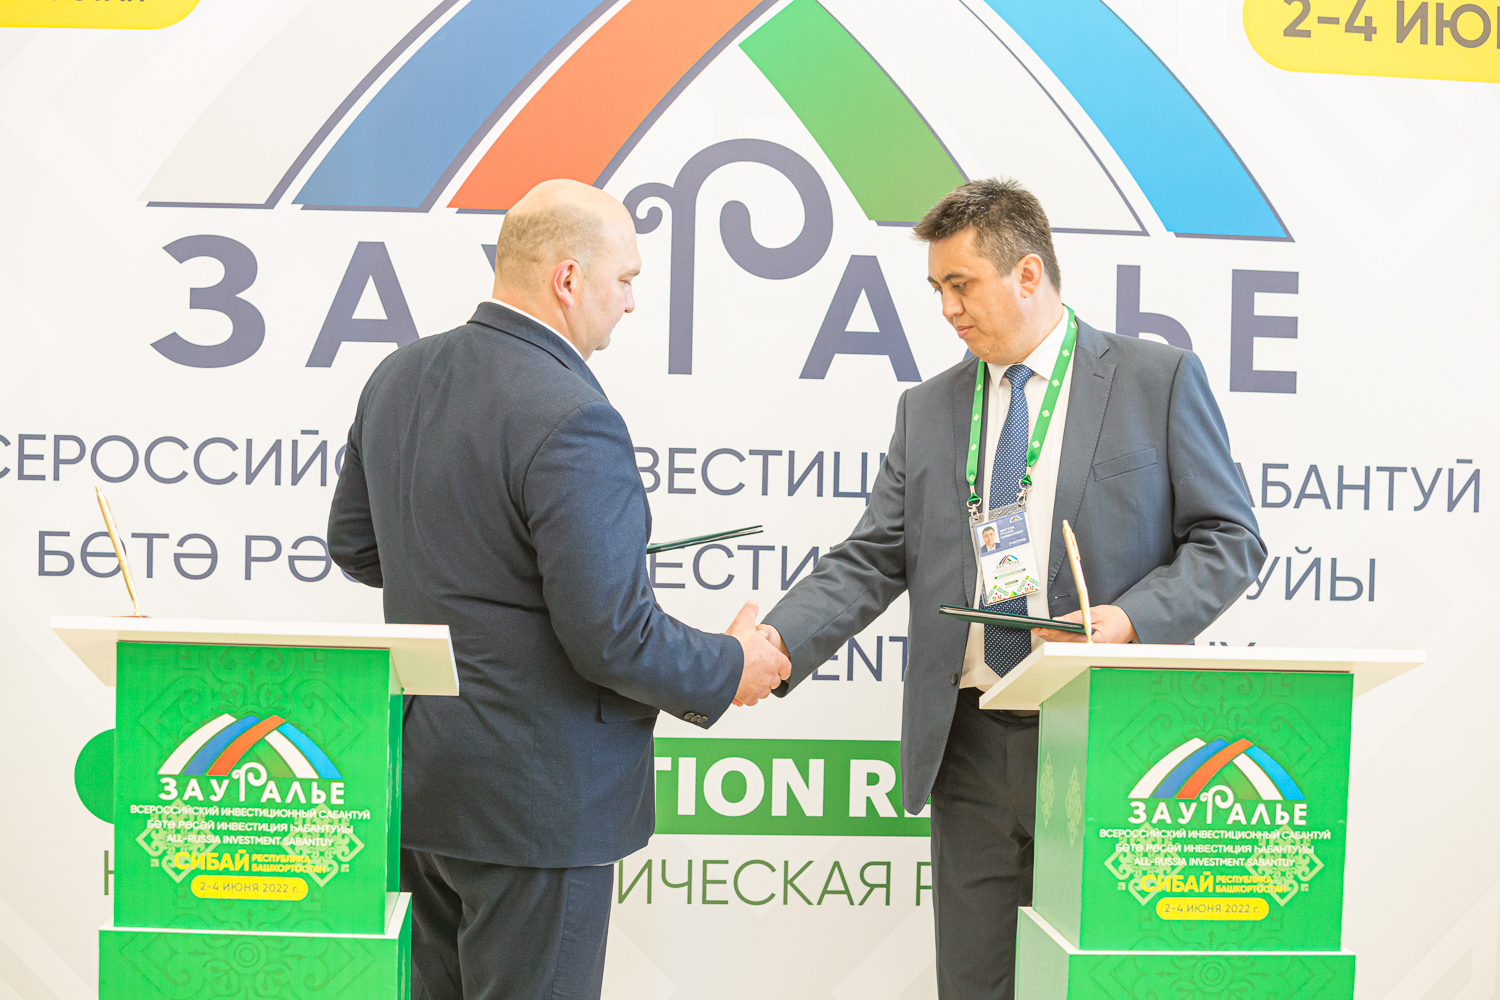 Дети из Башкирии смогут в 2023 году отдохнуть в Республике Беларусь